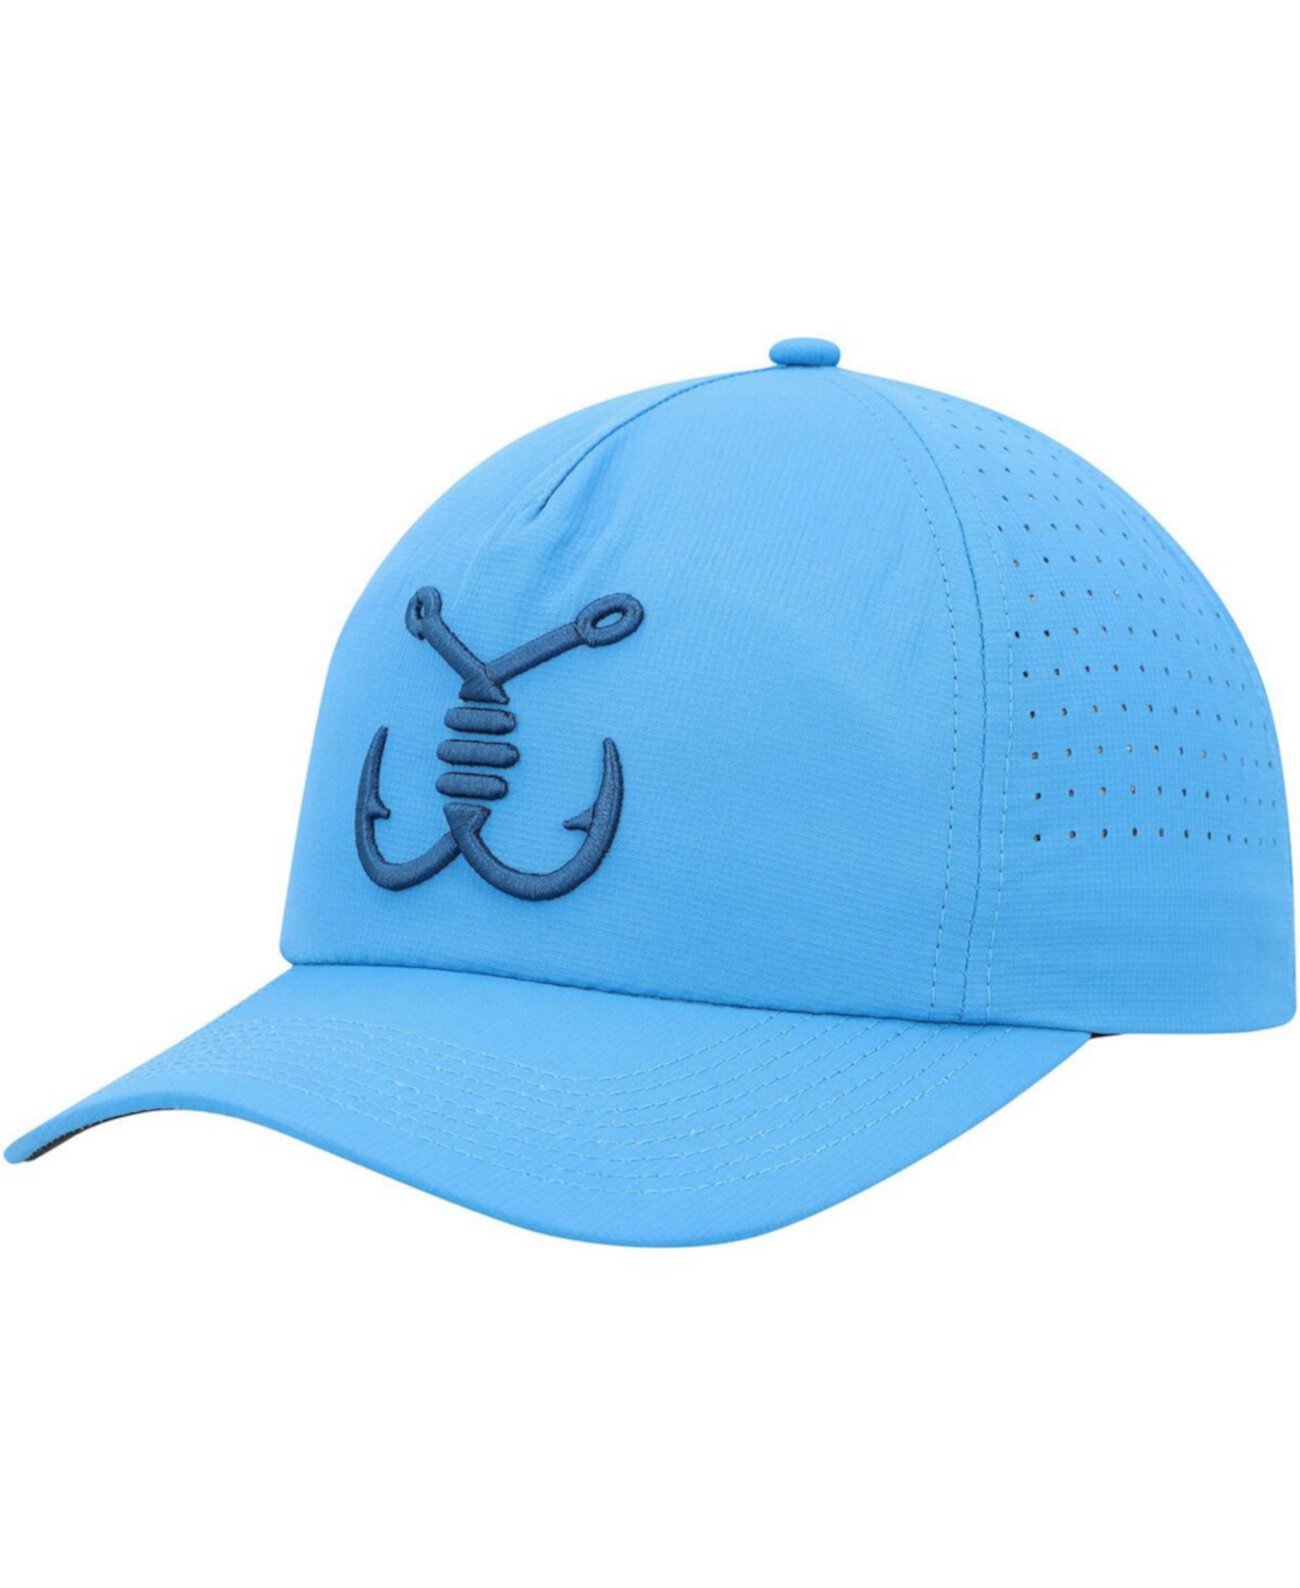 Мужская синяя шляпа Snapback Breeze Avid